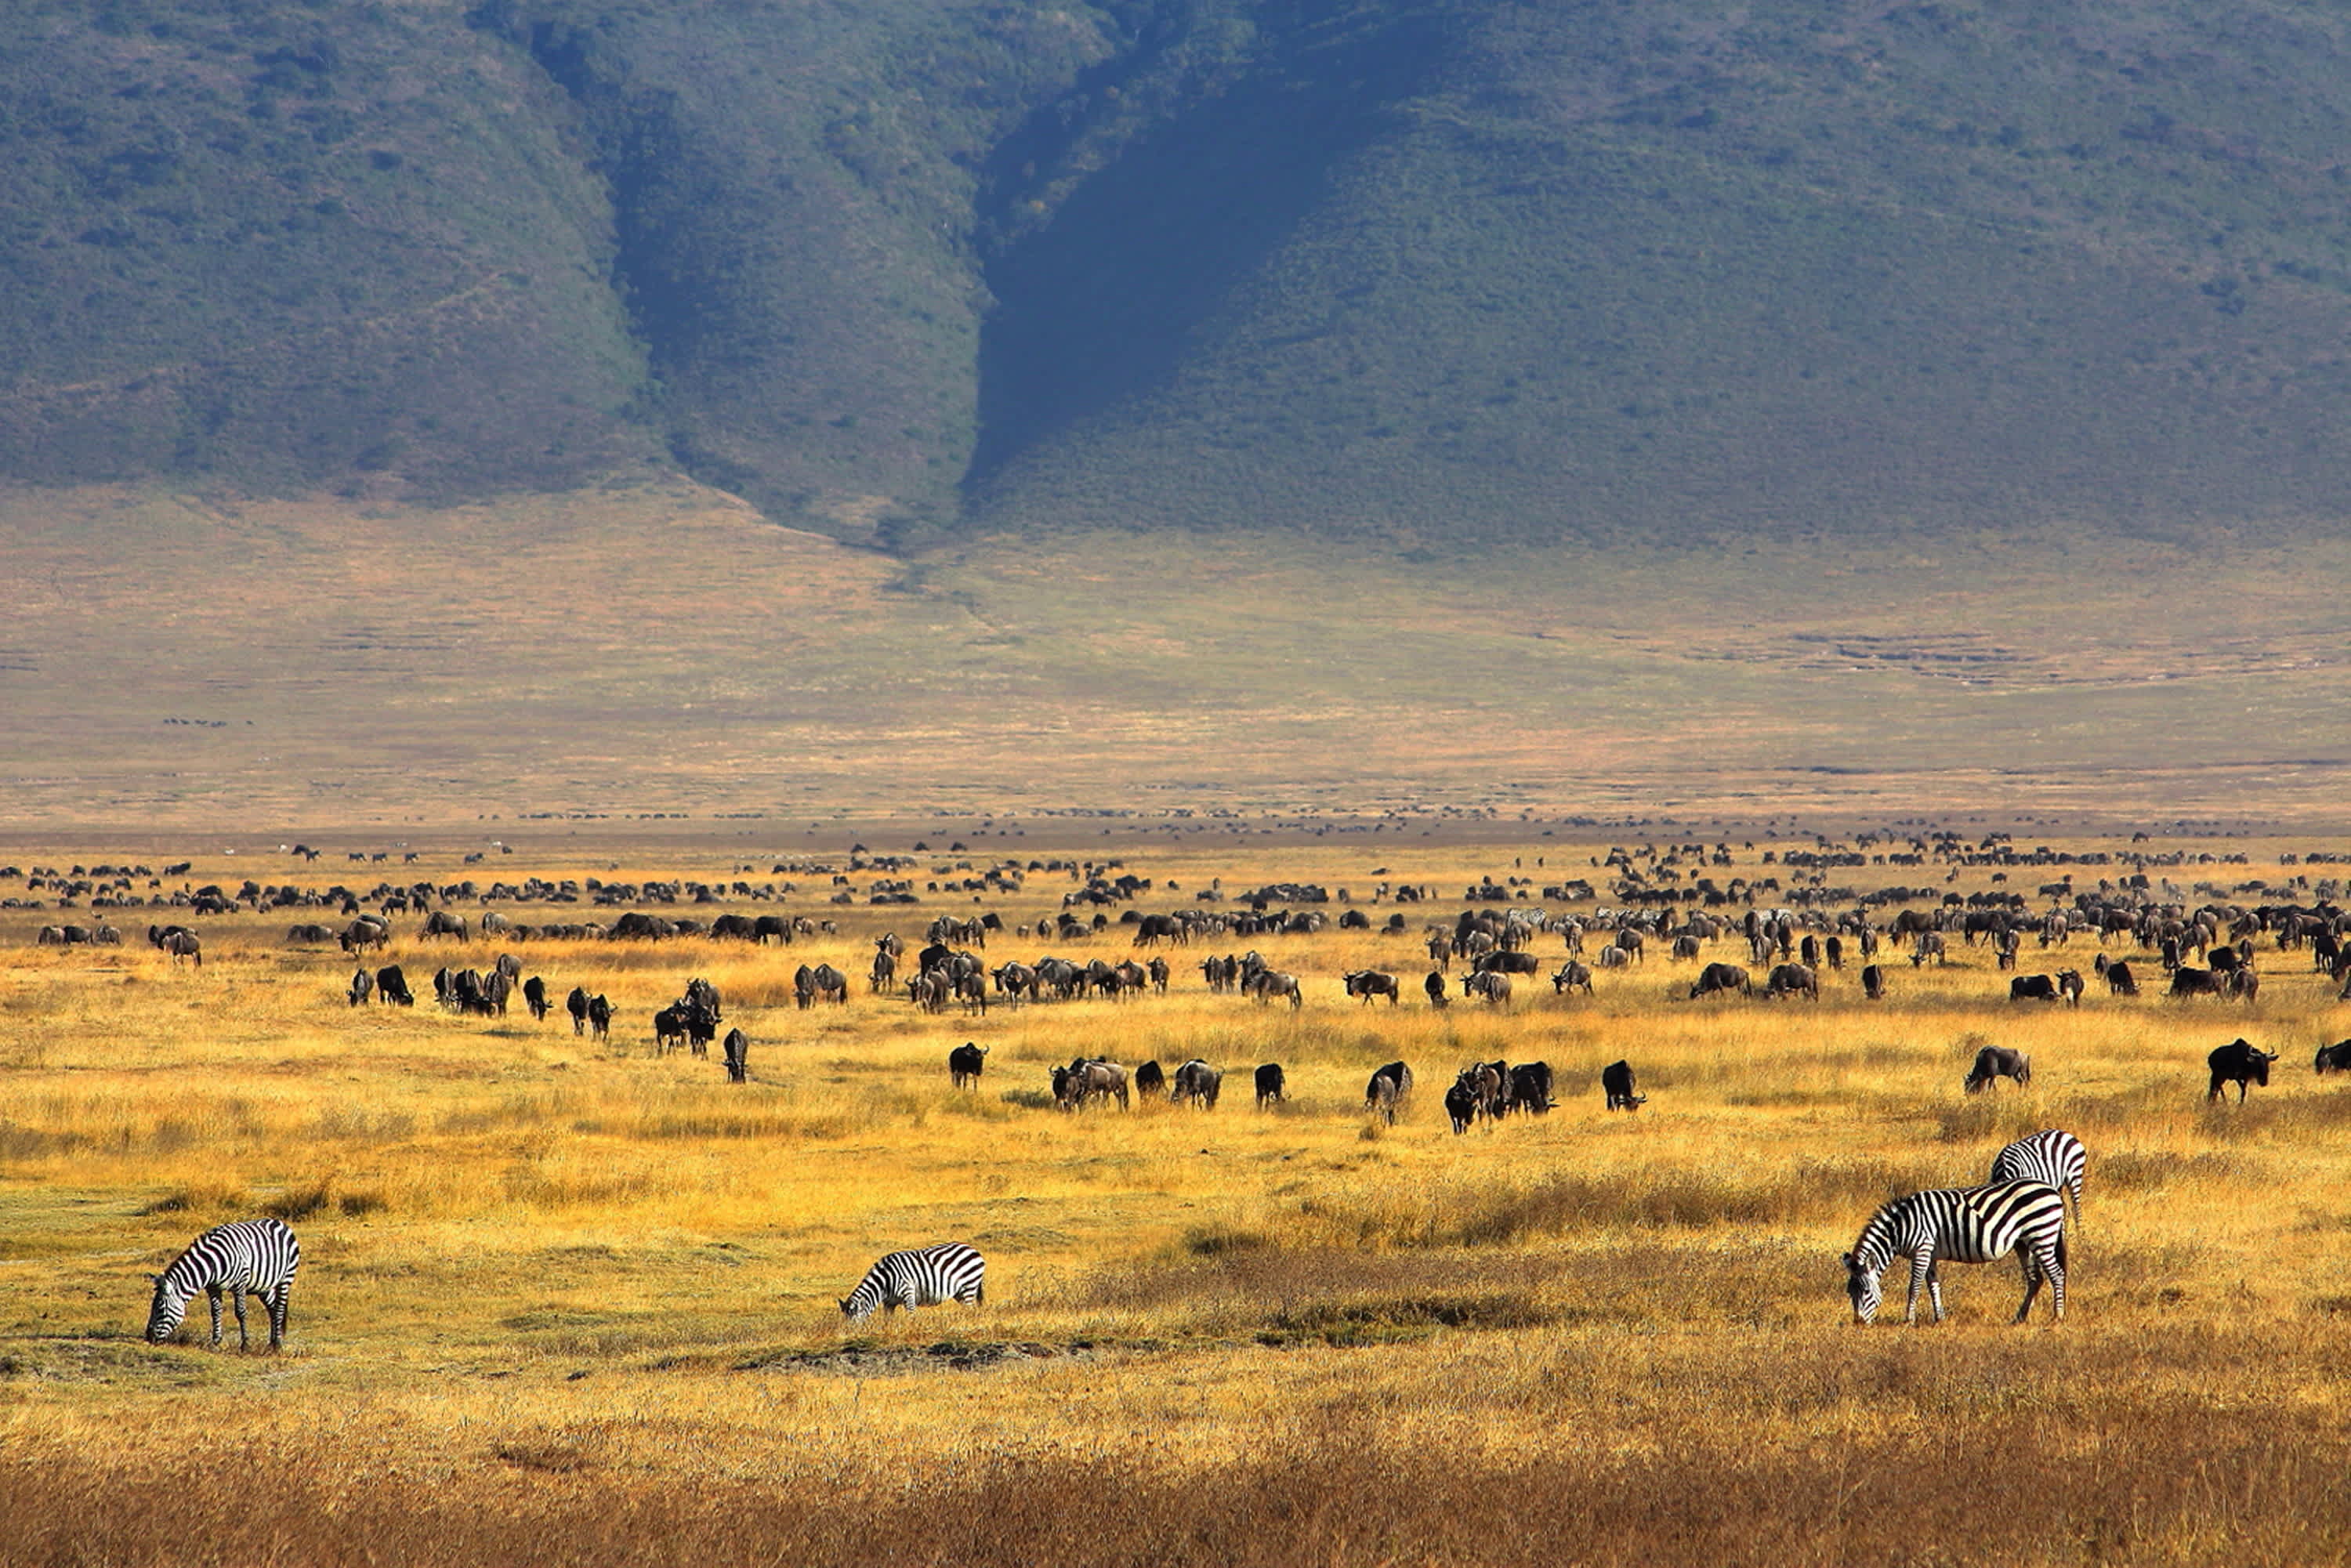 Découvrez le cratère Ngorongoro pendant votre voyage en Tanzanie